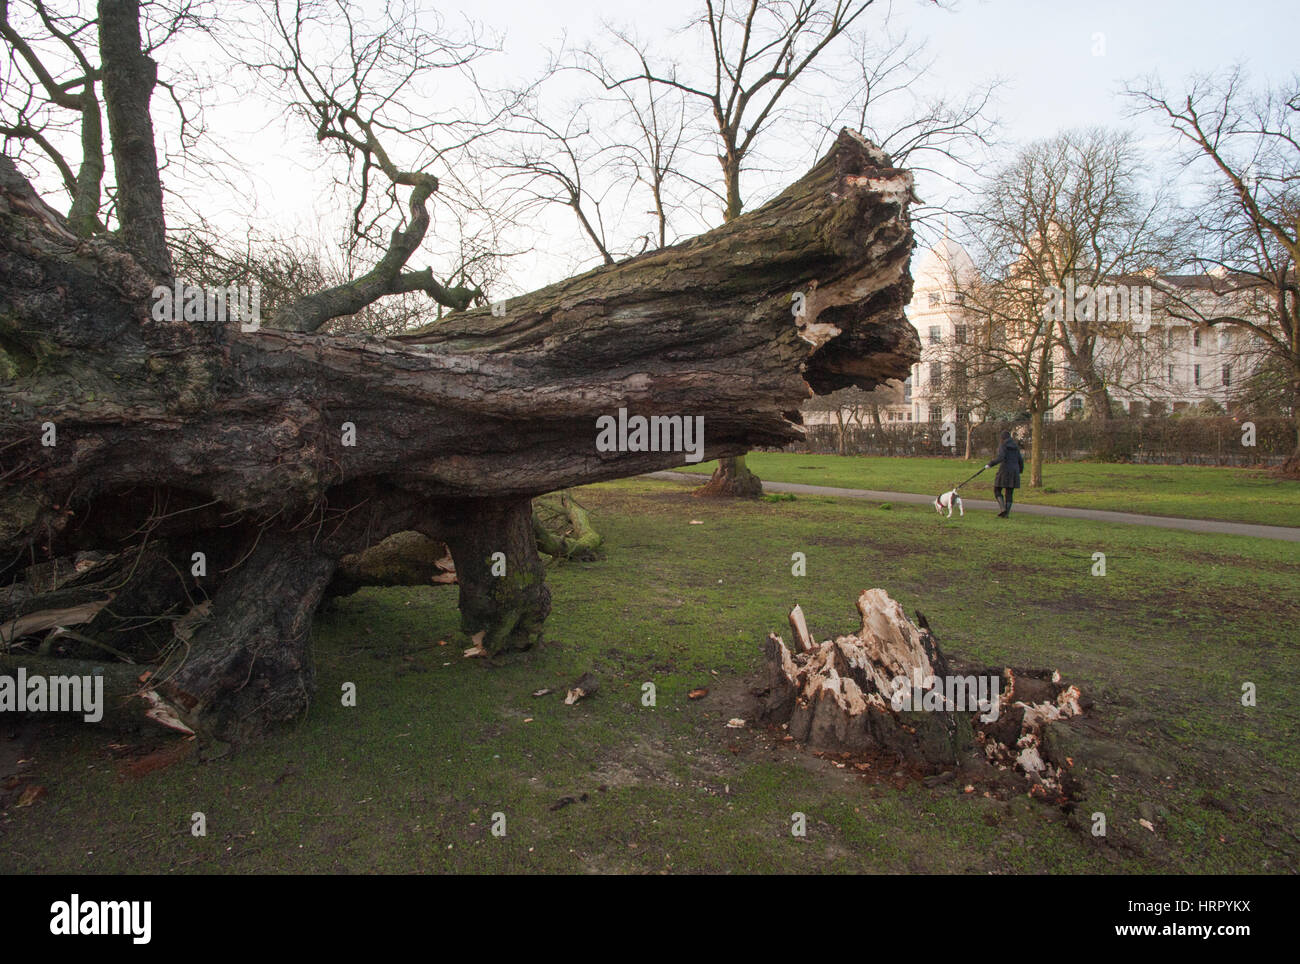 Arbre déracinés dans la tempête, Doris (23.03.2017), Regents Park, London, Royaume-Uni, Iles britanniques Banque D'Images